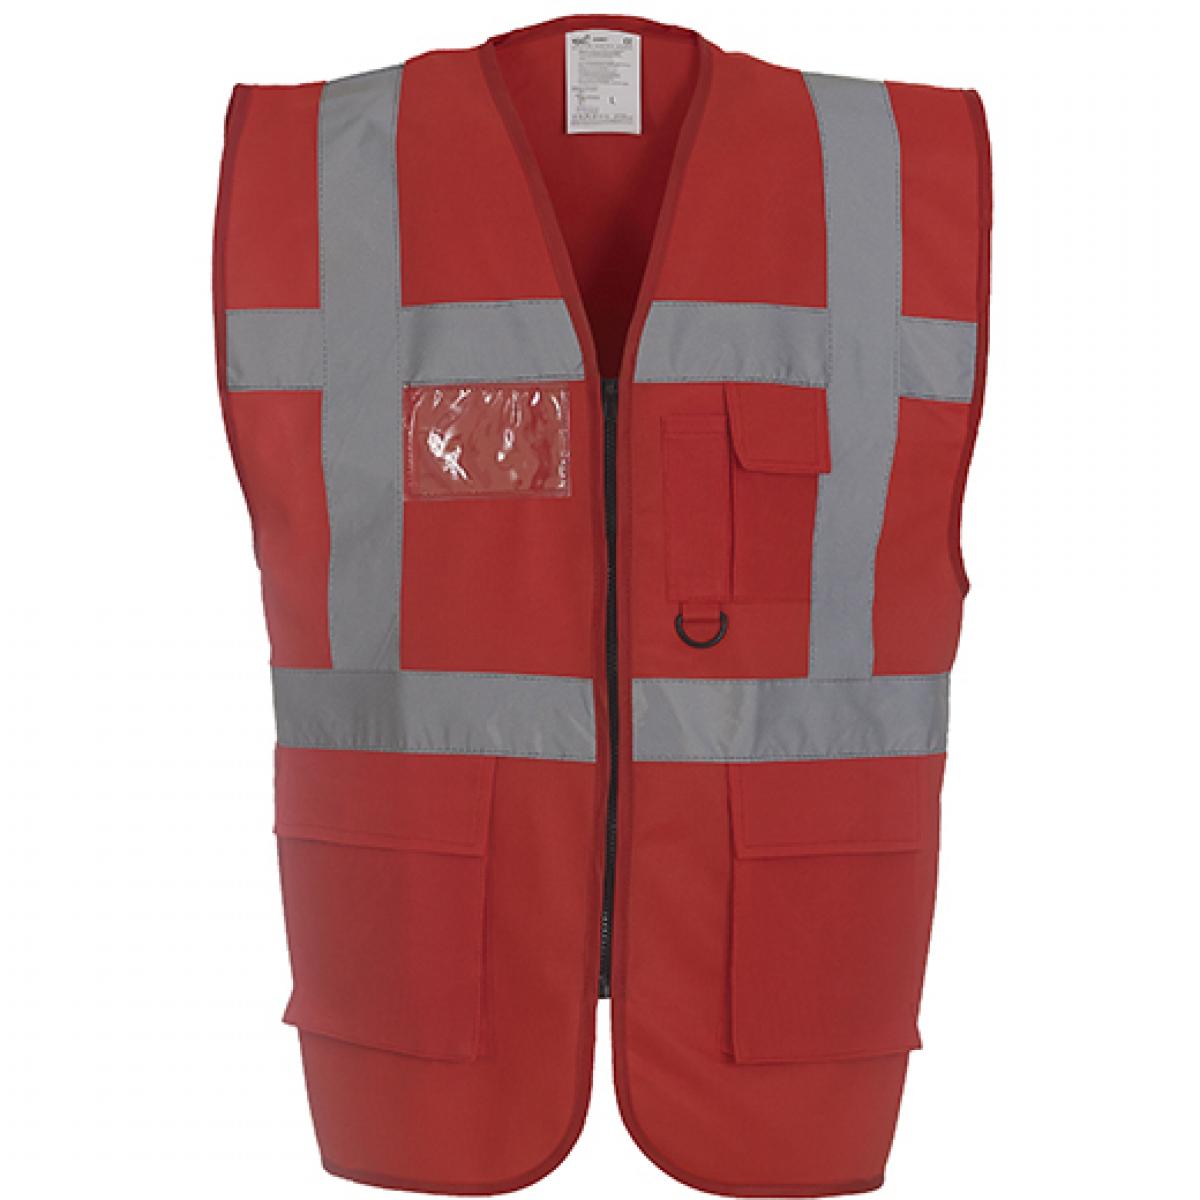 Hersteller: YOKO Herstellernummer: HVW801 Artikelbezeichnung: Herren Multi-Functional Executive Waistcoat Farbe: Red